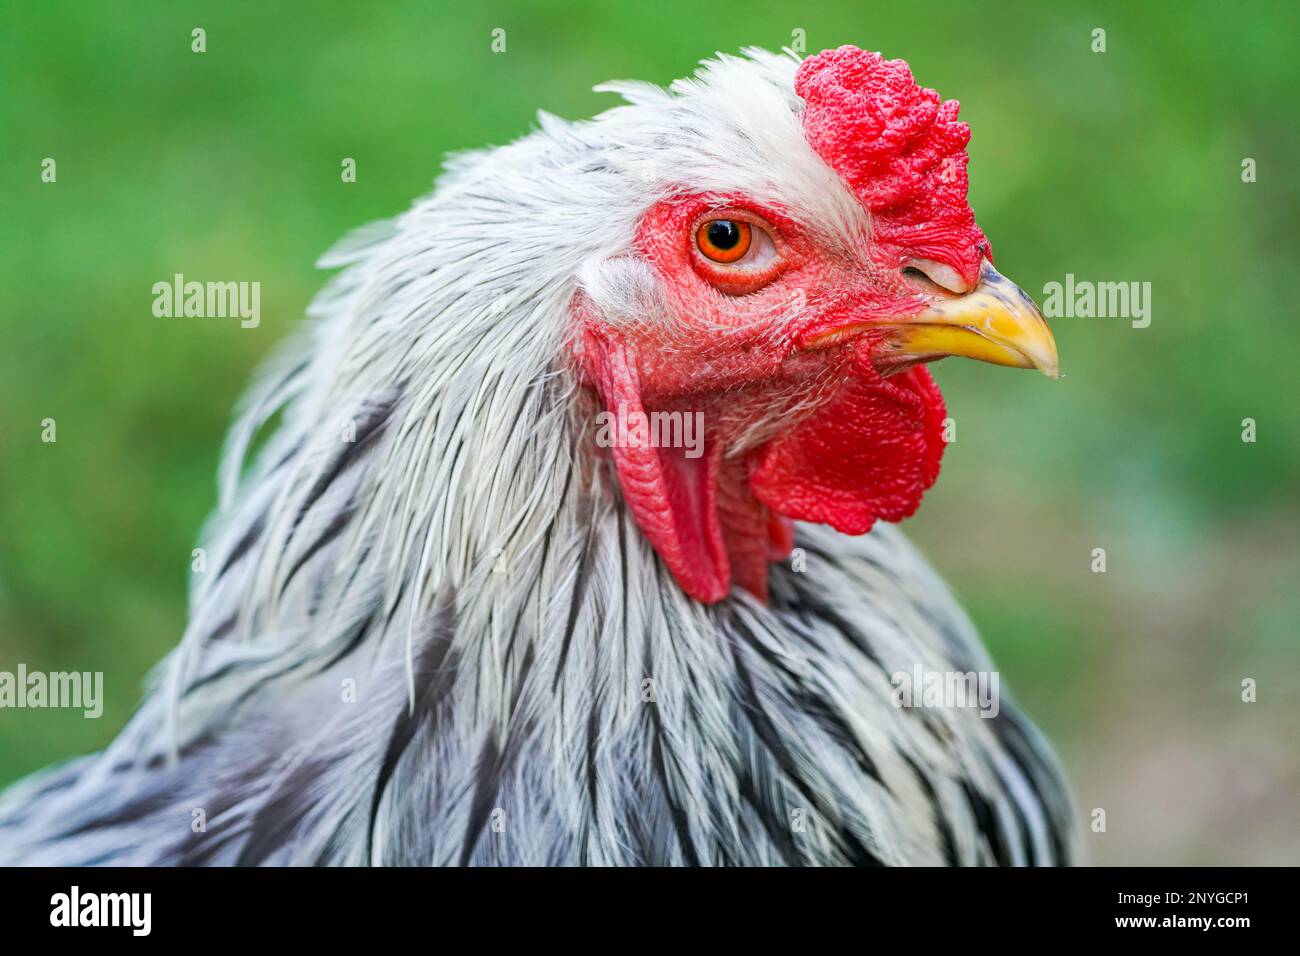 Retrato de una gallina con plumaje blanco y negro. Pájaro primer plano. Foto de stock